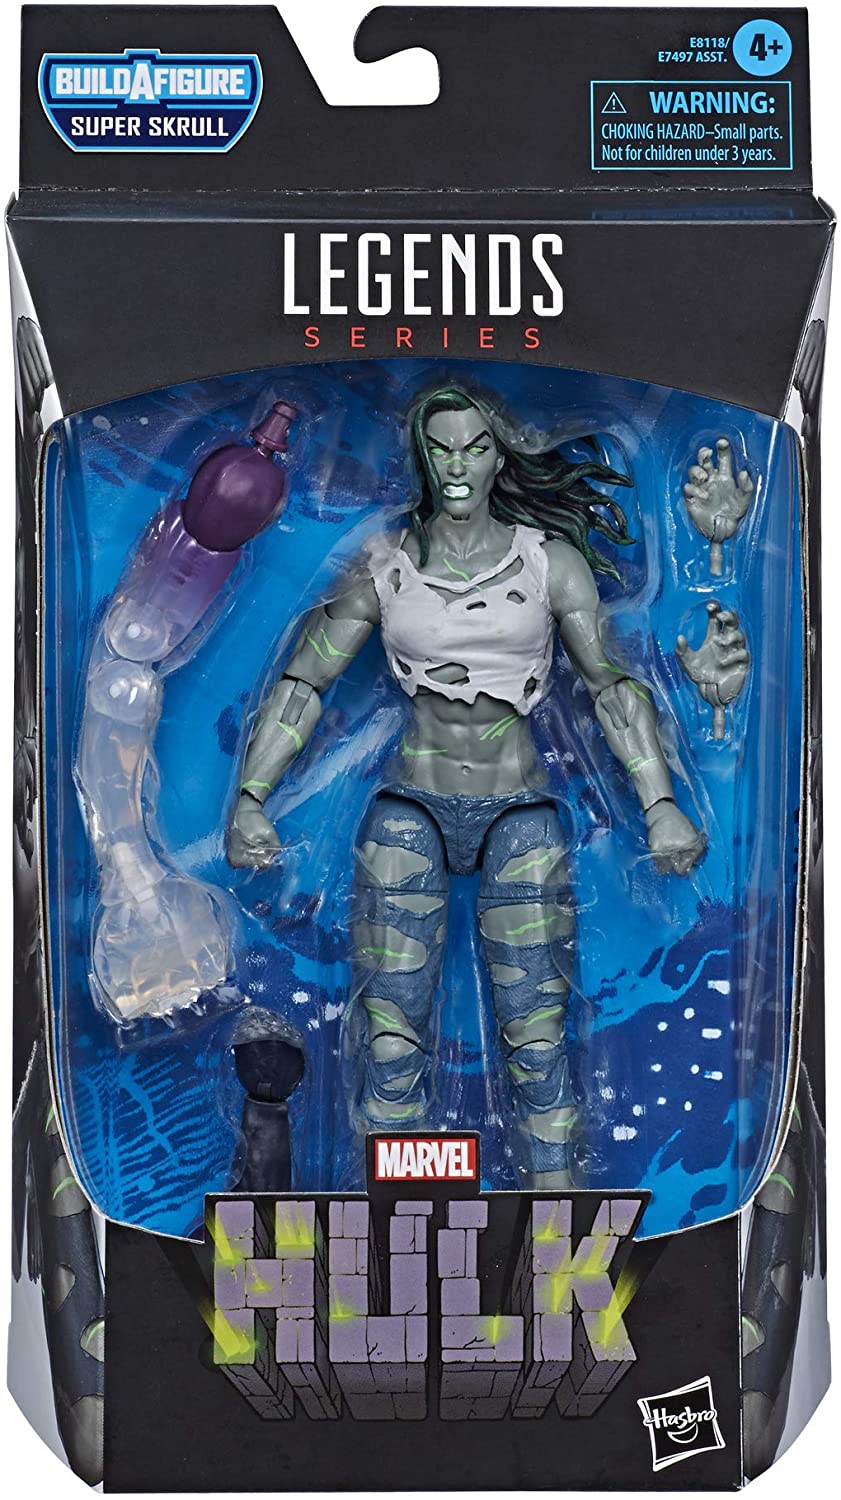 Hasbro Marvel Legends Series Super Skrull - She-Hulk Action Figure